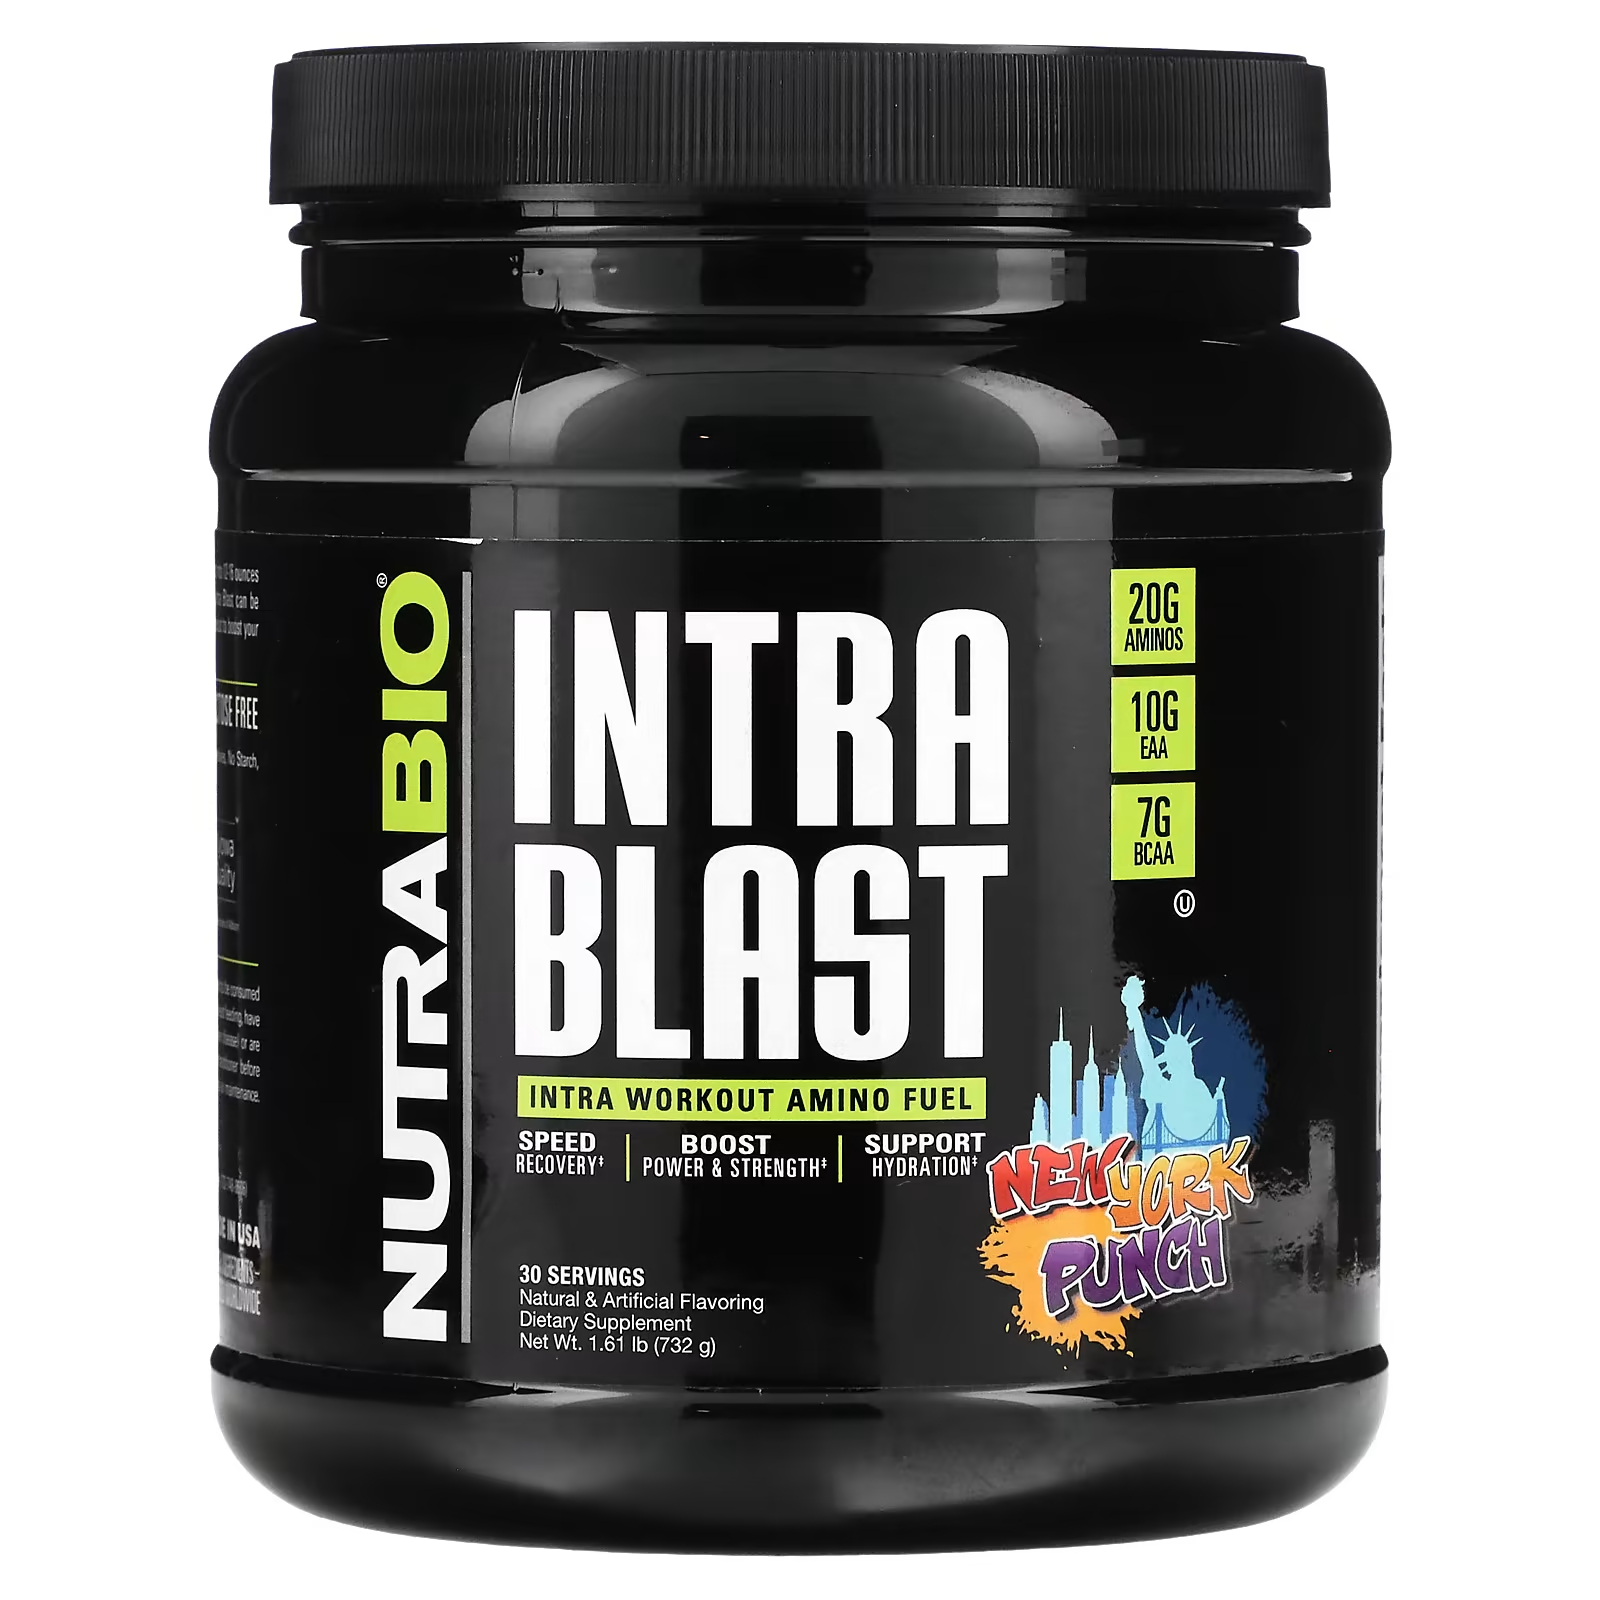 Пищевая добавка NutraBio Intra Blast Intra Workout Muscle Fuel New York Punch animal nitro eaa набор незаменимых анаболических аминокислот 44 упаковки